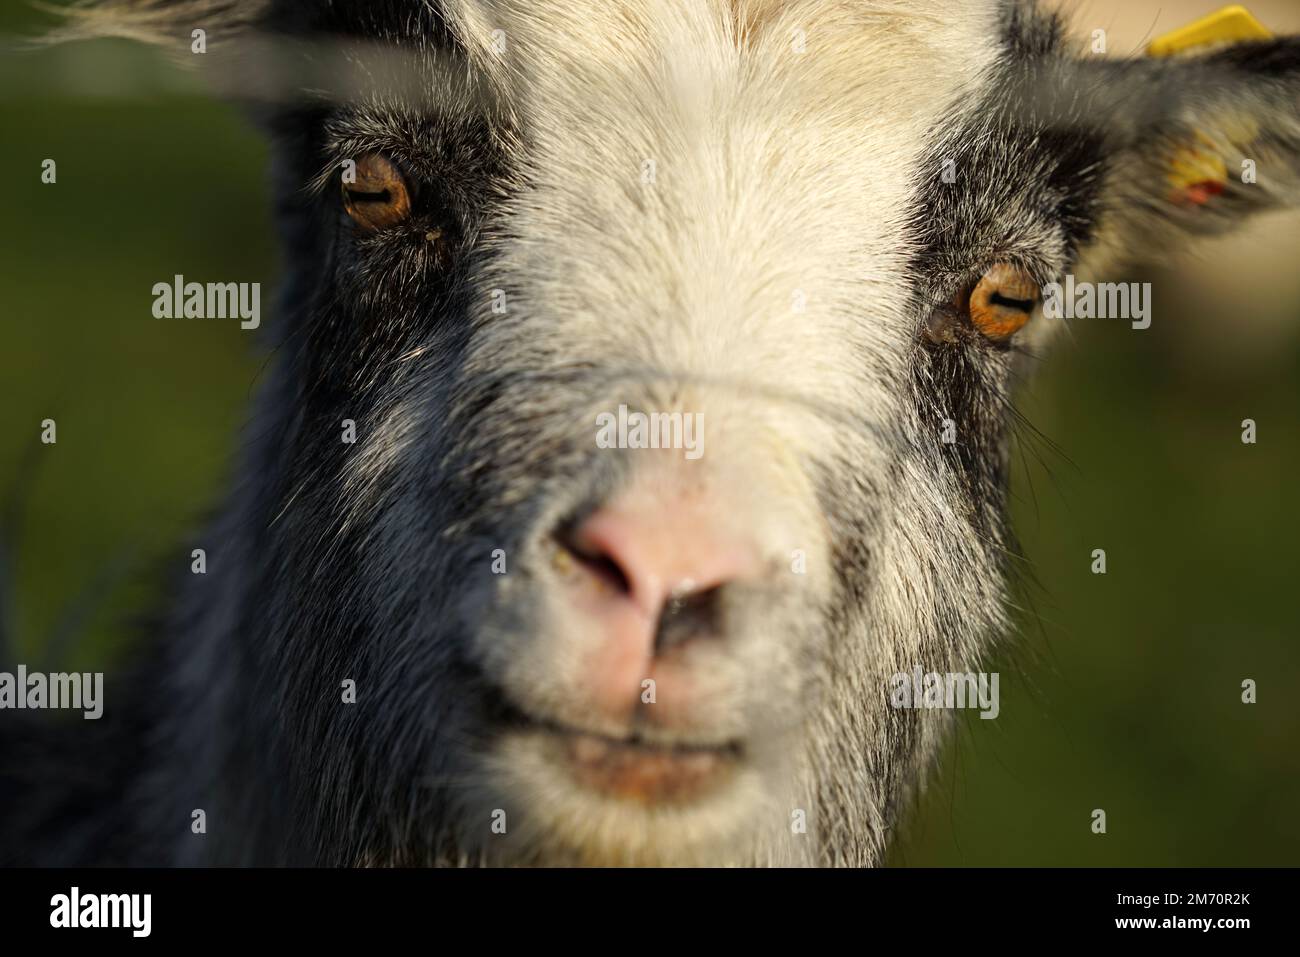 La cabra holandesa Landrace mira con curiosidad a la cámara. El cercado entre sí está borroso Foto de stock